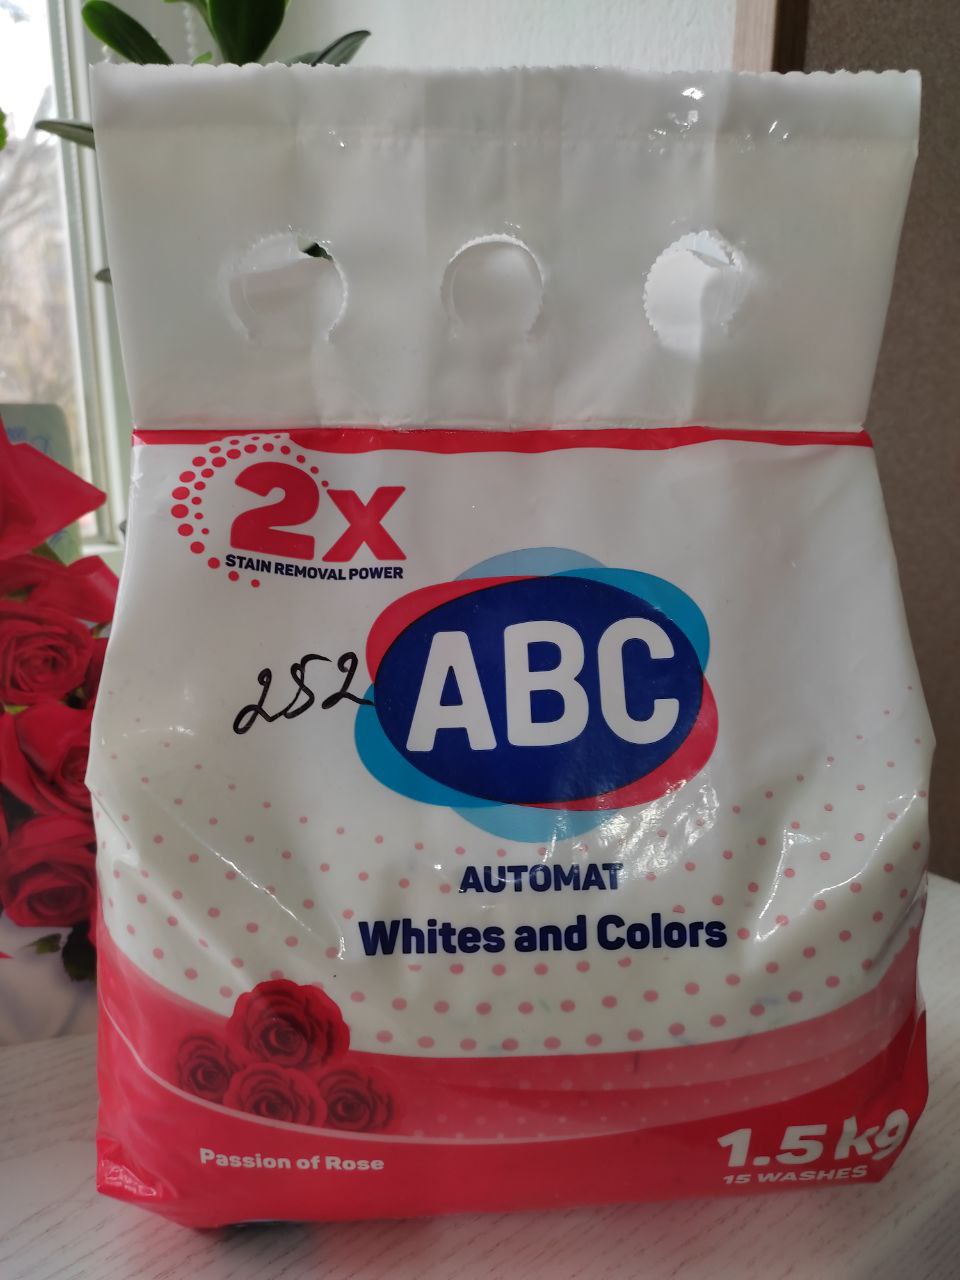 Стиральный порошок ABC AUTOMAT Whites and Colors (Passion Rose) фото